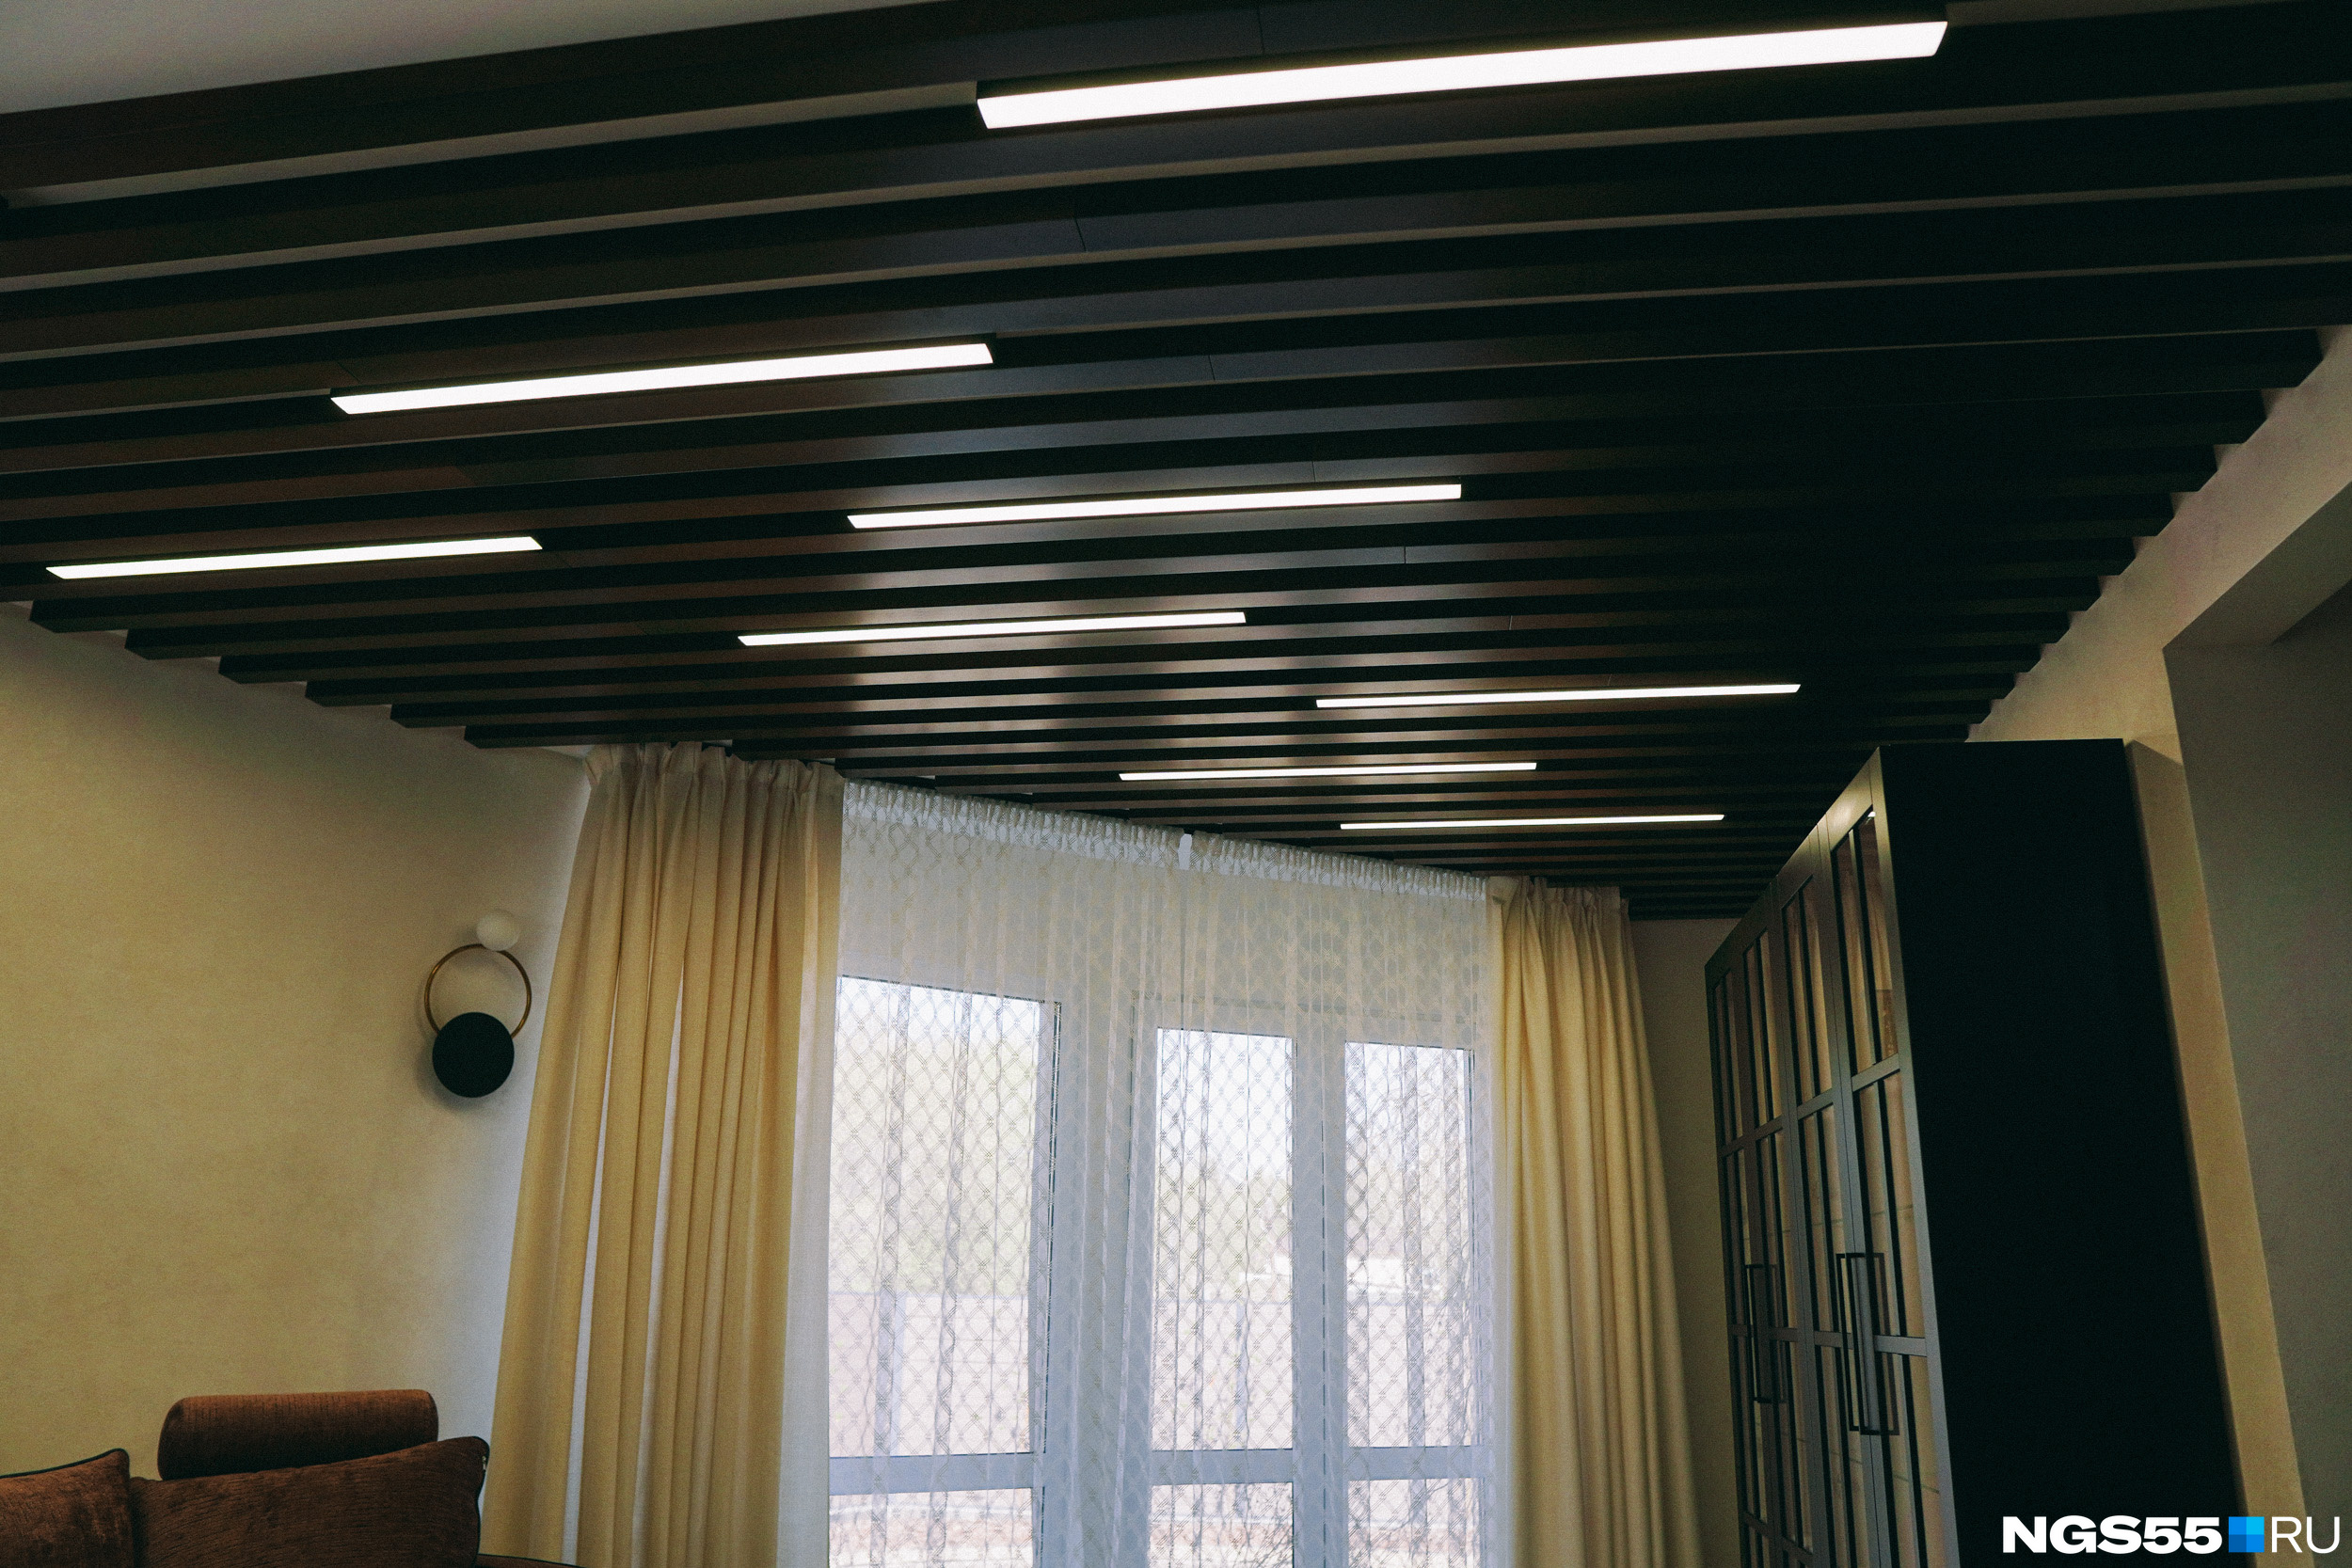 Потолок гостиной оформлен рейками со встроенными лампами